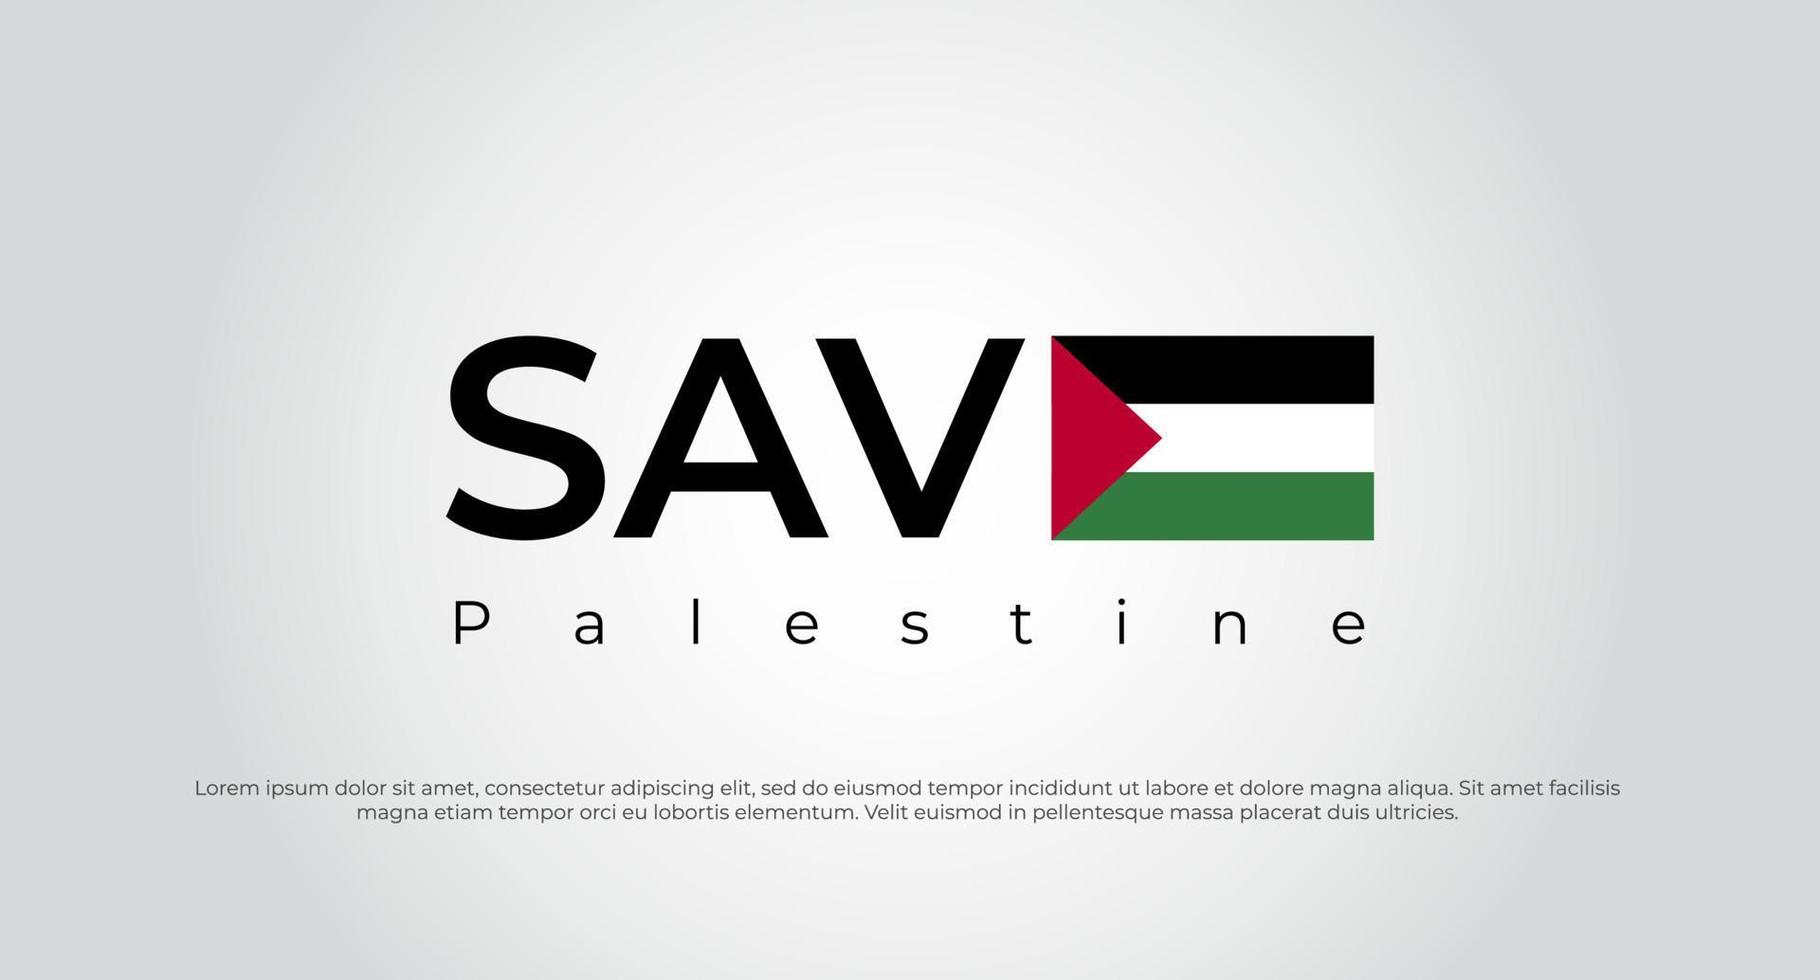 Rette Gaza, rette Palästina. Speichern Sie Palästina-Beschriftungshintergrund. Palästina-Konzept-Vektor-Illustration speichern vektor